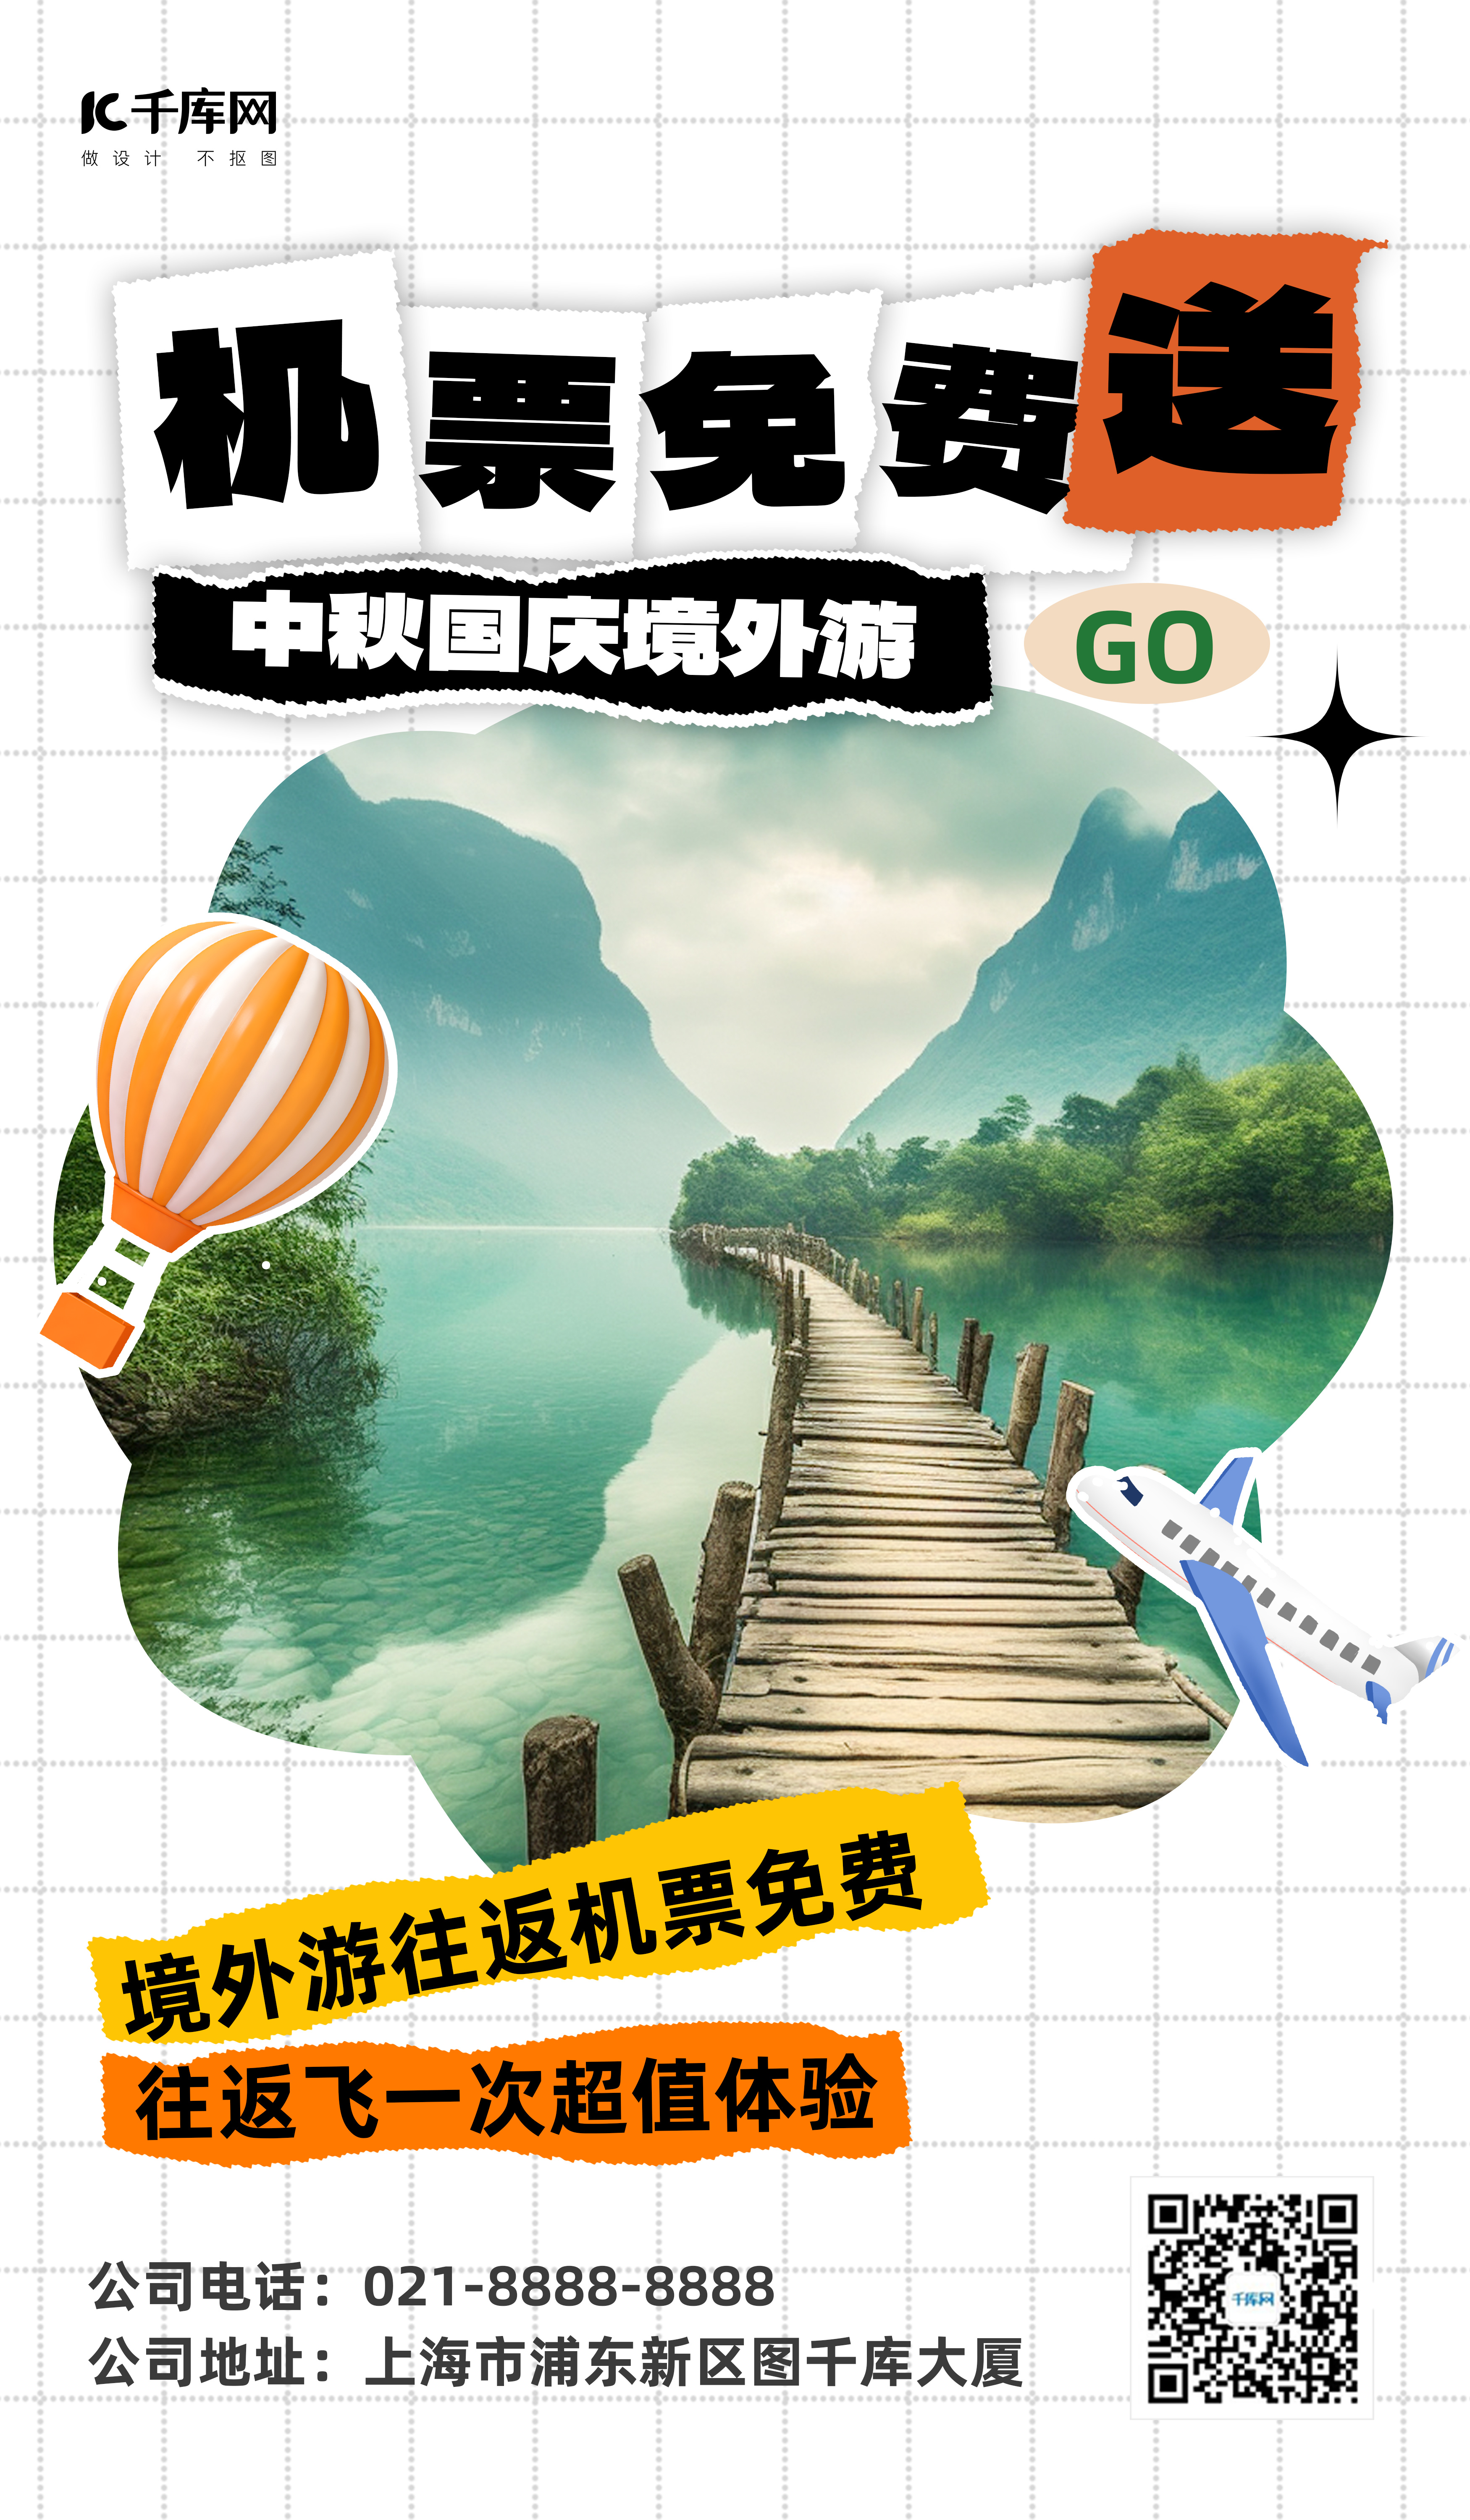 中秋国庆旅游景区绿色小红书风AI海报图片